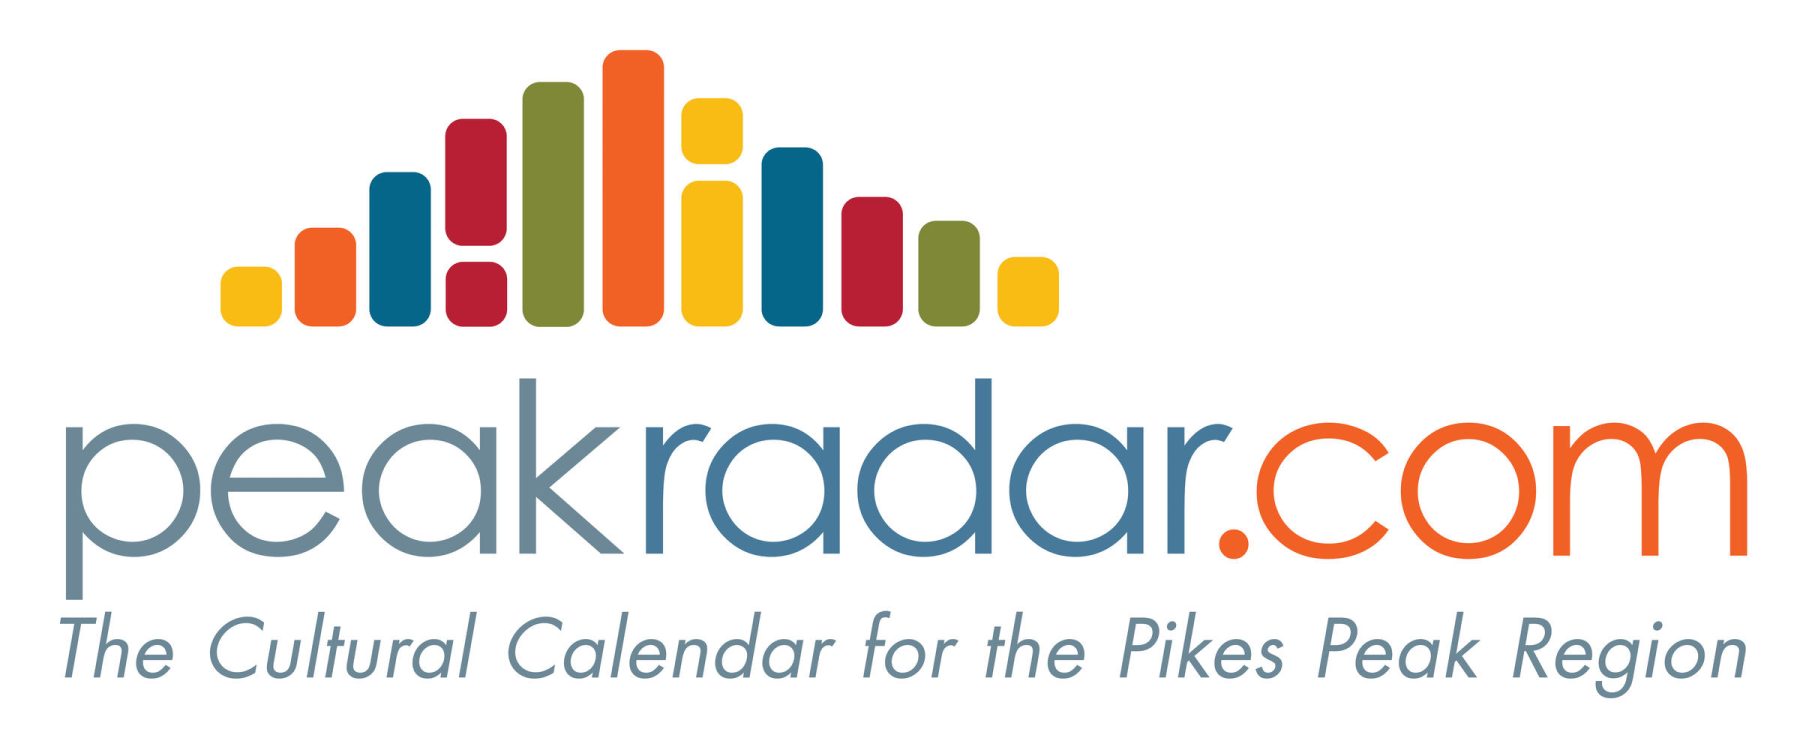 PeakRadar.com logo